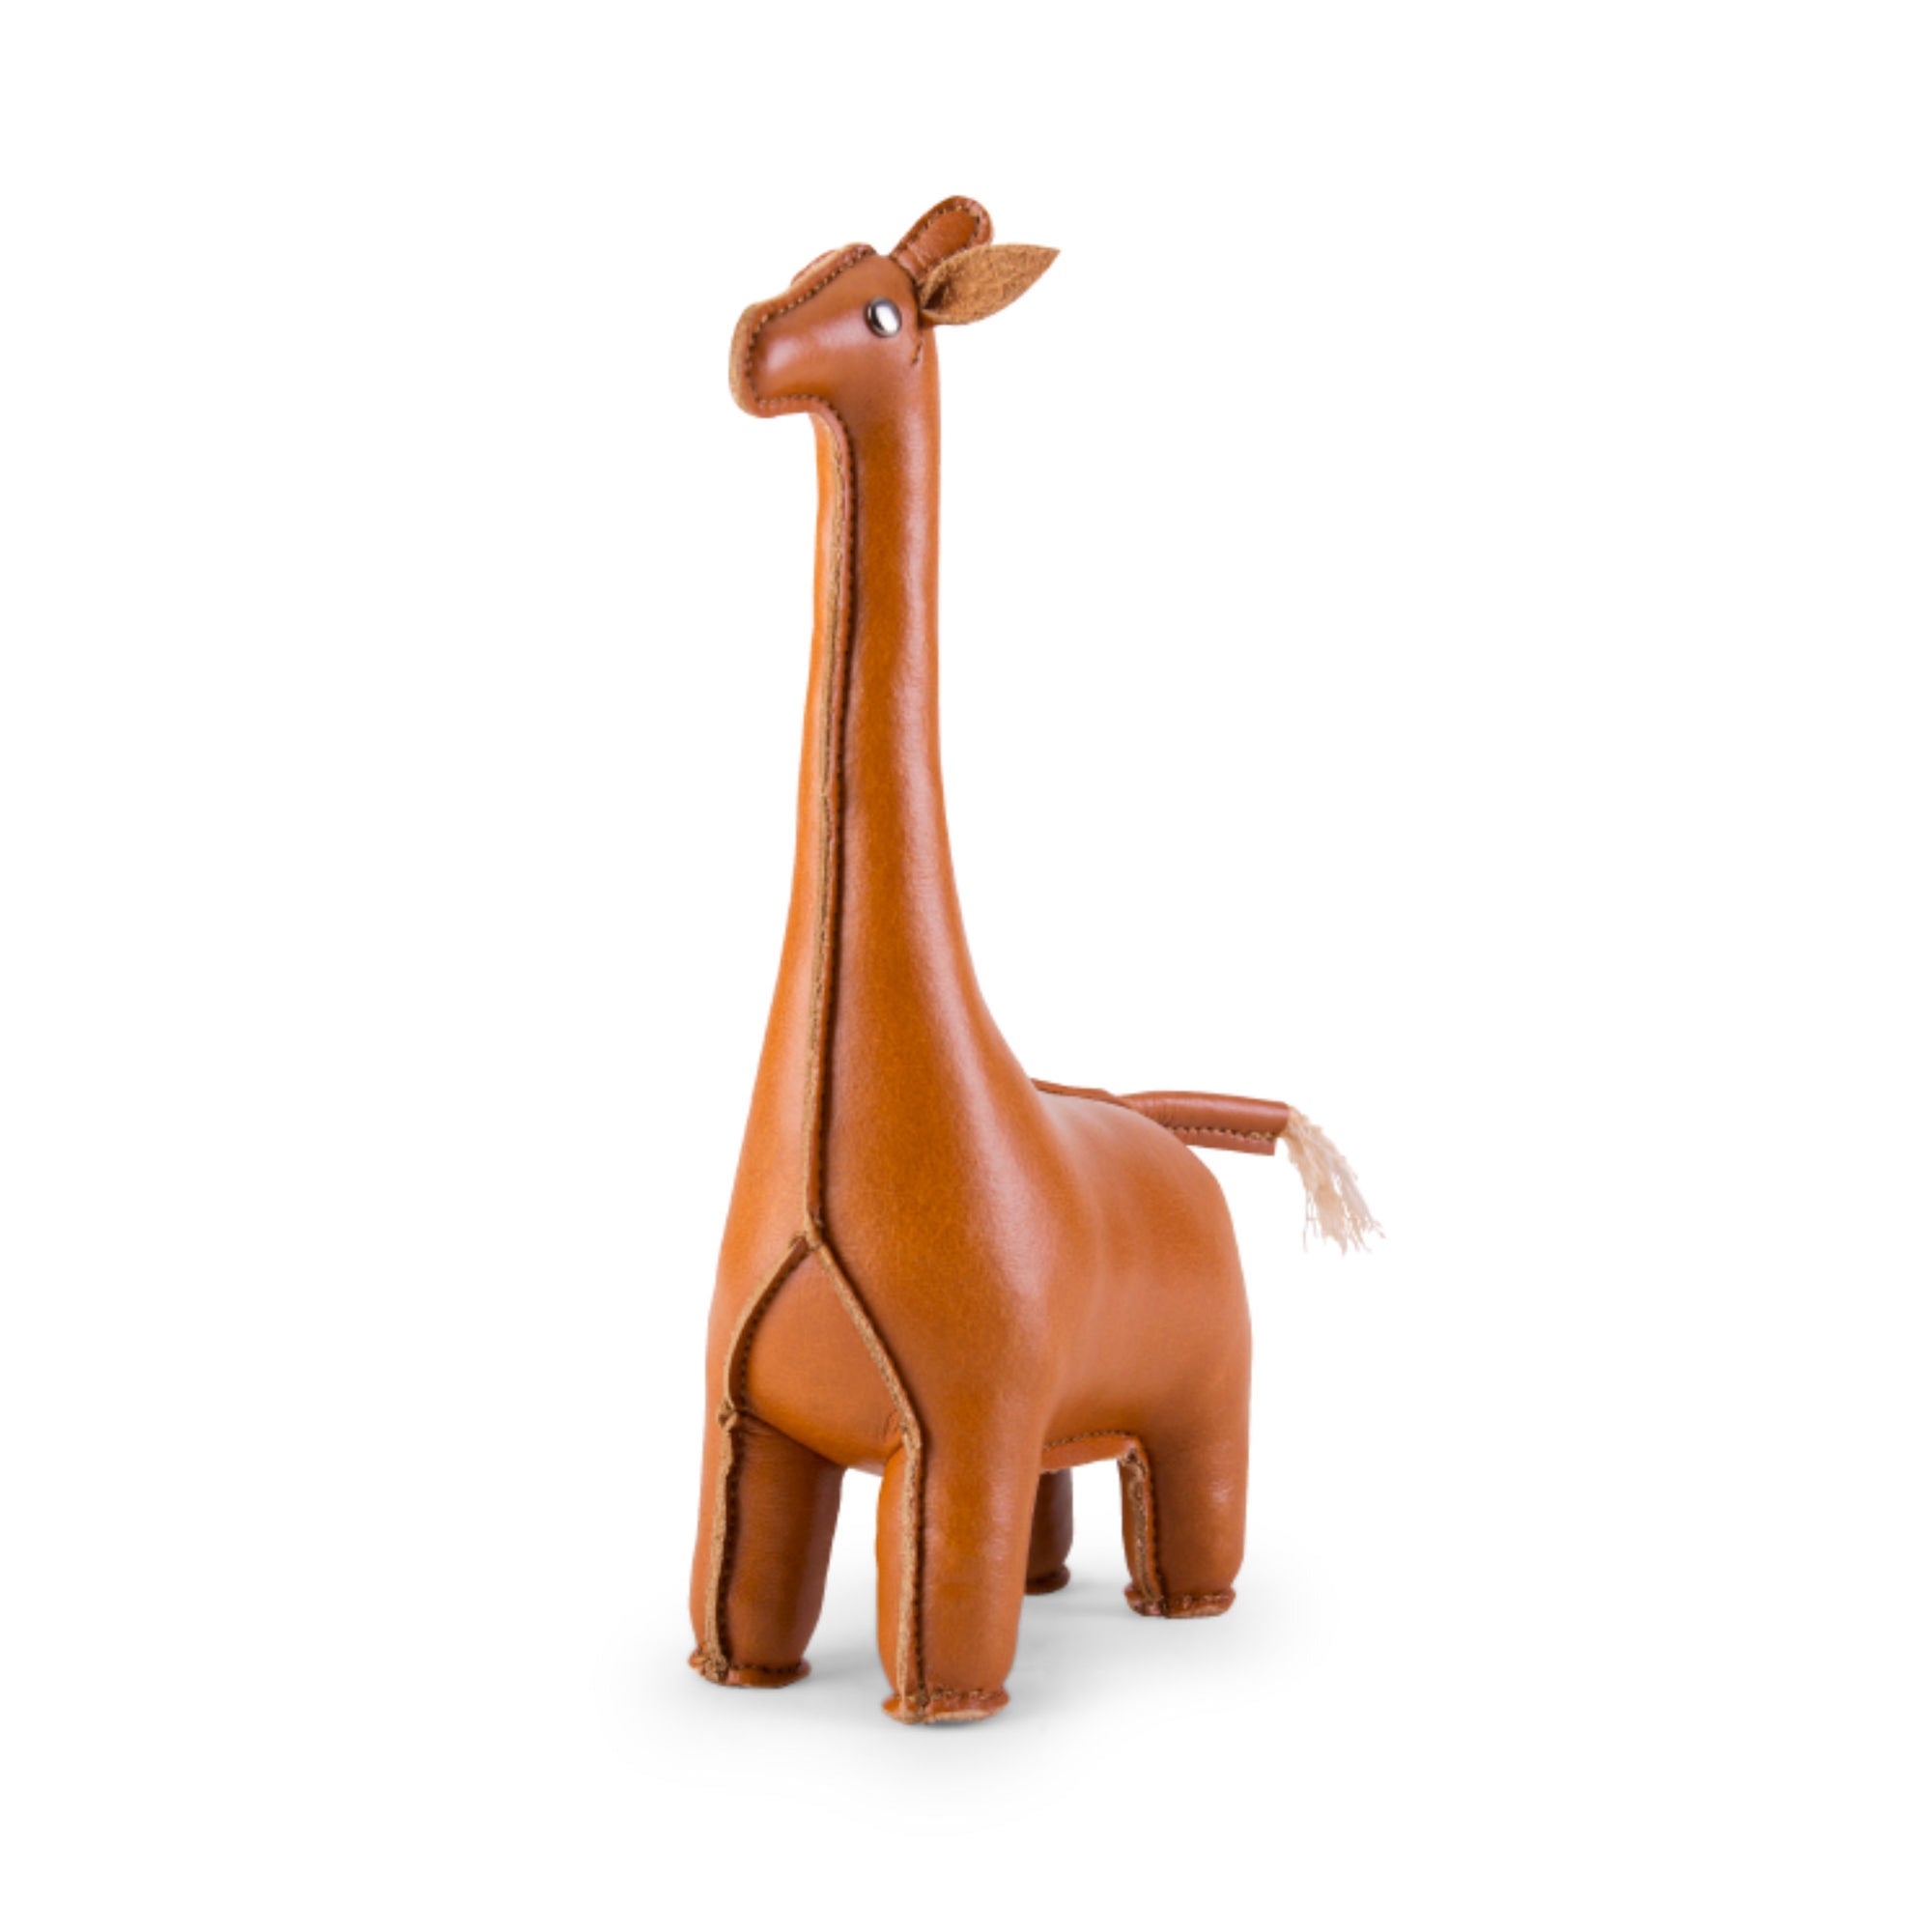 Zuny Paperweight Classic Giraffe, tan